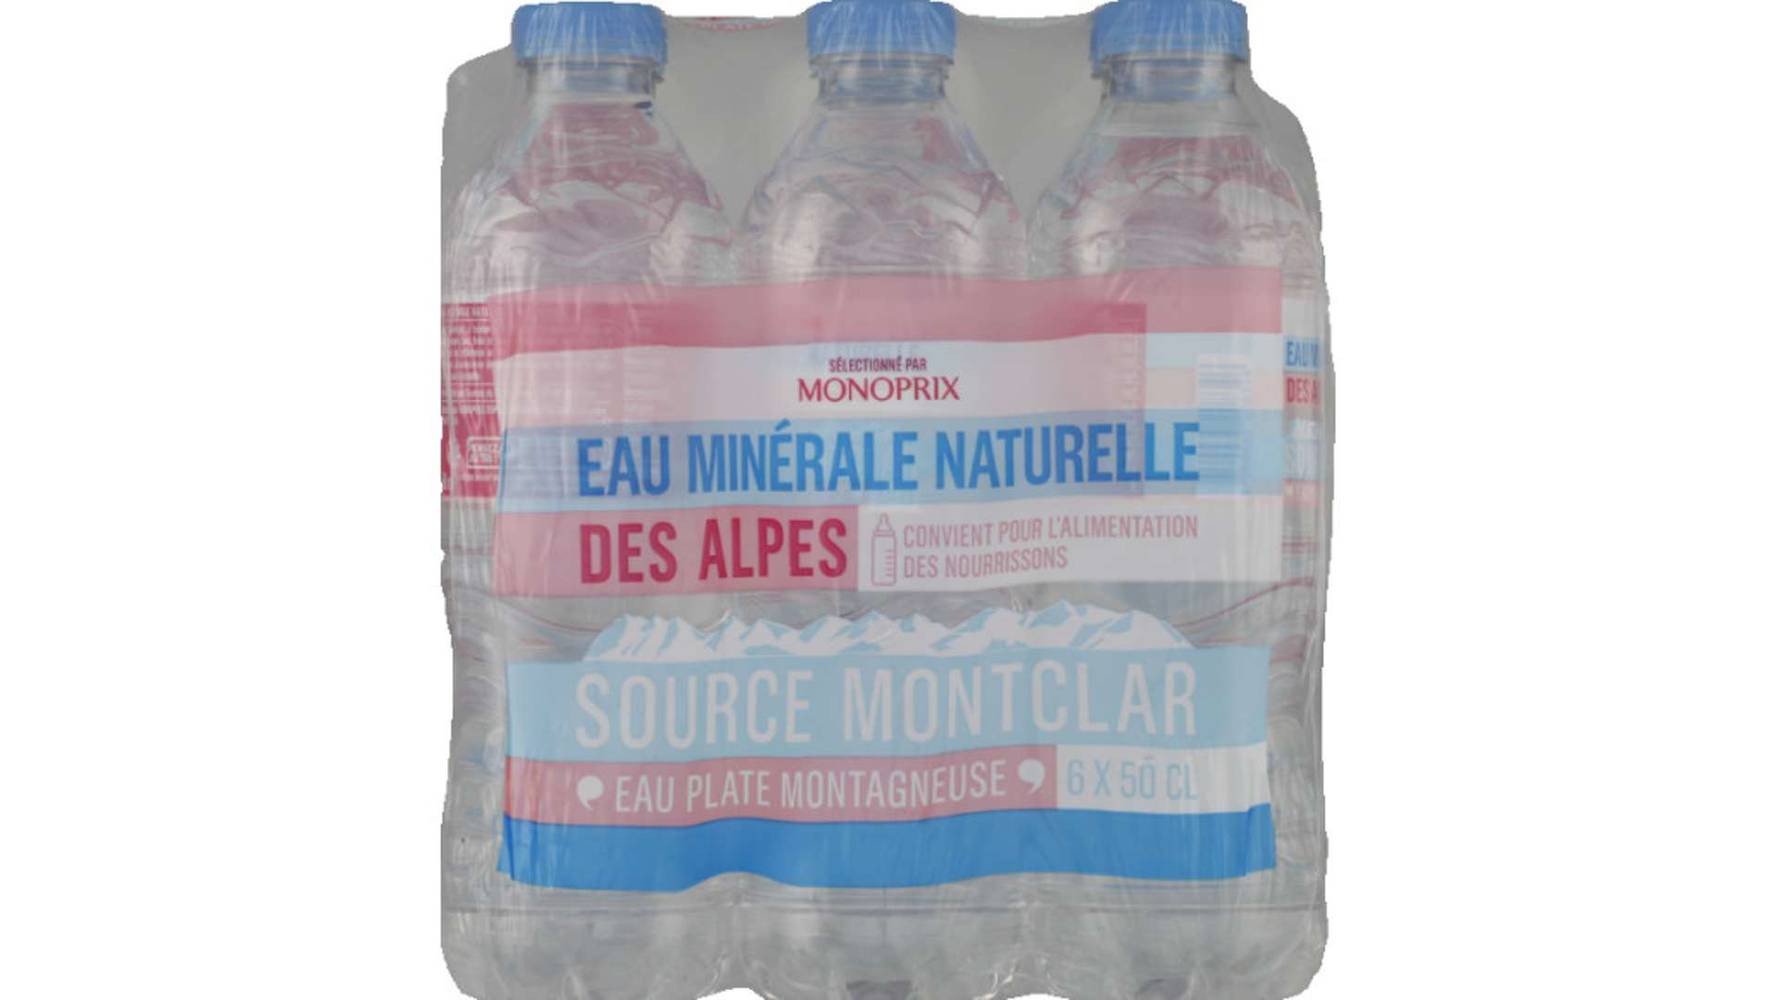 Monoprix Eau minérale des Alpes source Montclar Les 6 bouteilles de 50 cl